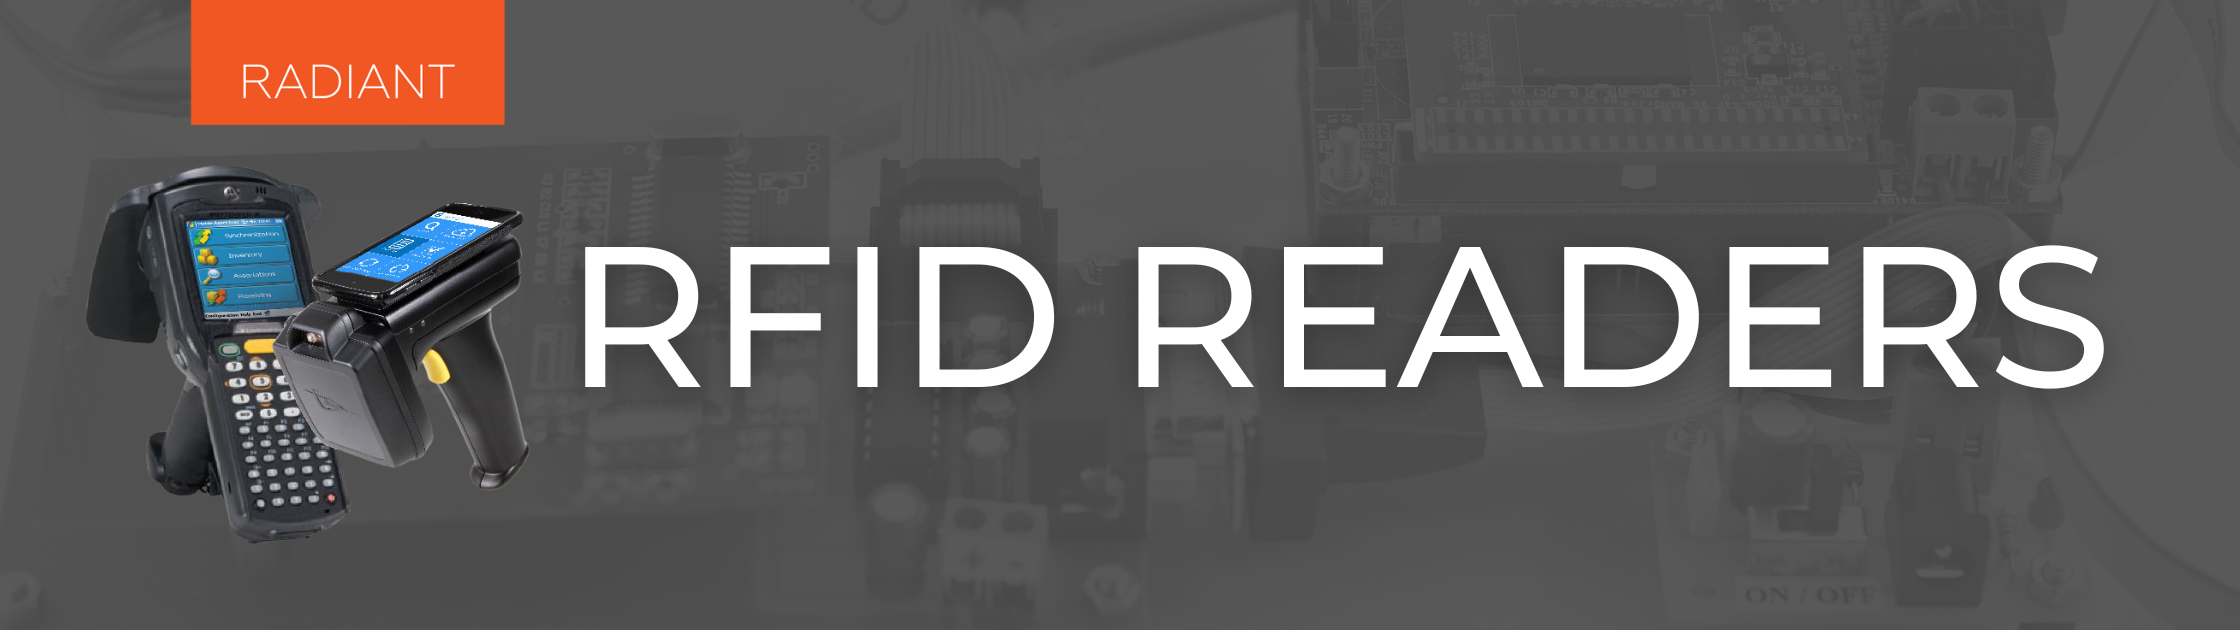 RFID System - RFID Systems - RFID System Components of an RFID Solution - RFID System Components - RFID Readers - RFID Parts - RFID Reader - RFID Tags and Readers - RFID Solutions - RFID Hardware